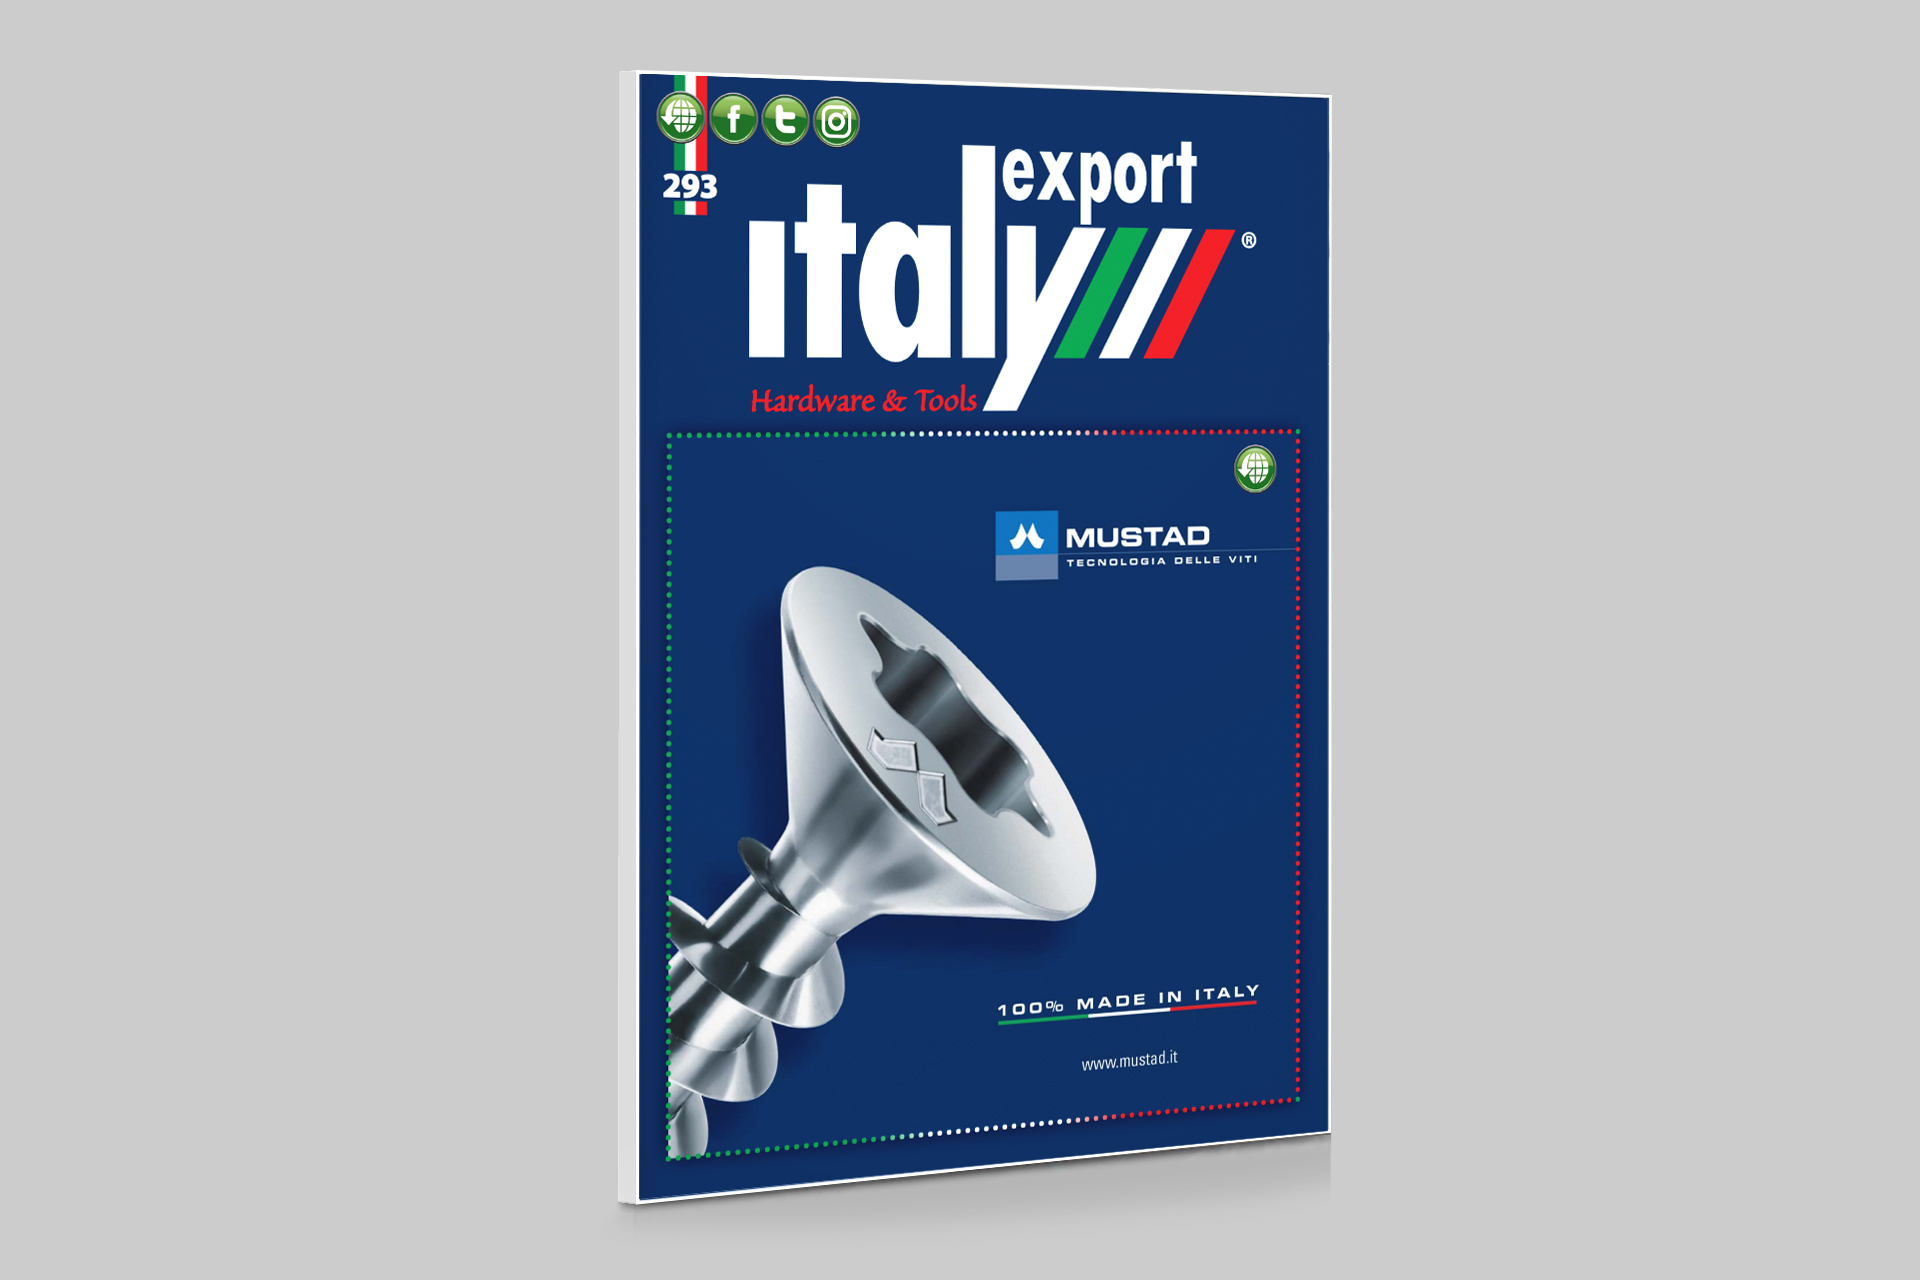 ItalyExport293_1-2023_1920x1280_one